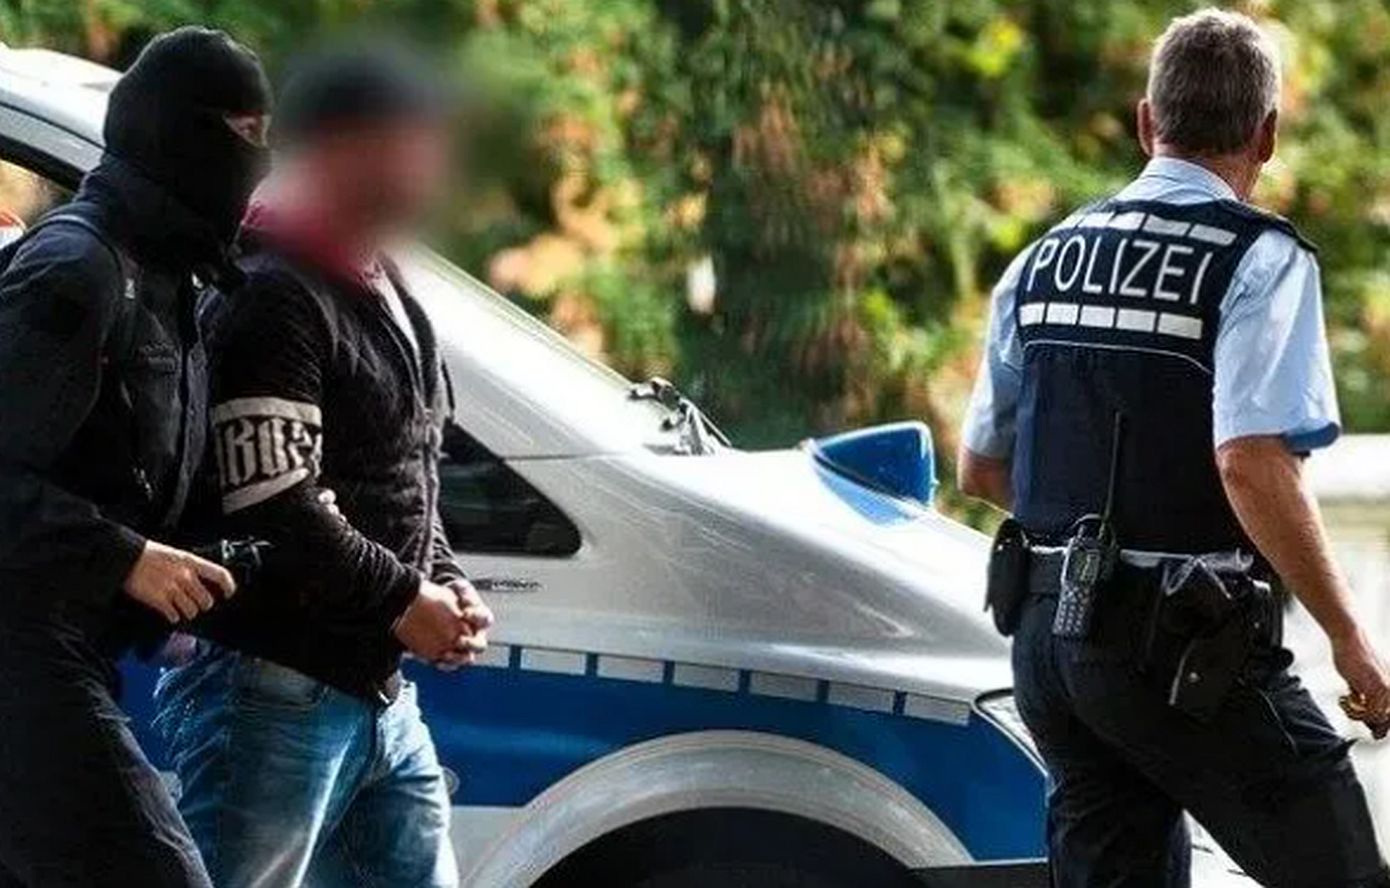 Αυξάνονται τα περιστατικά βίας κατά πολιτικών και κομμάτων στην Γερμανία